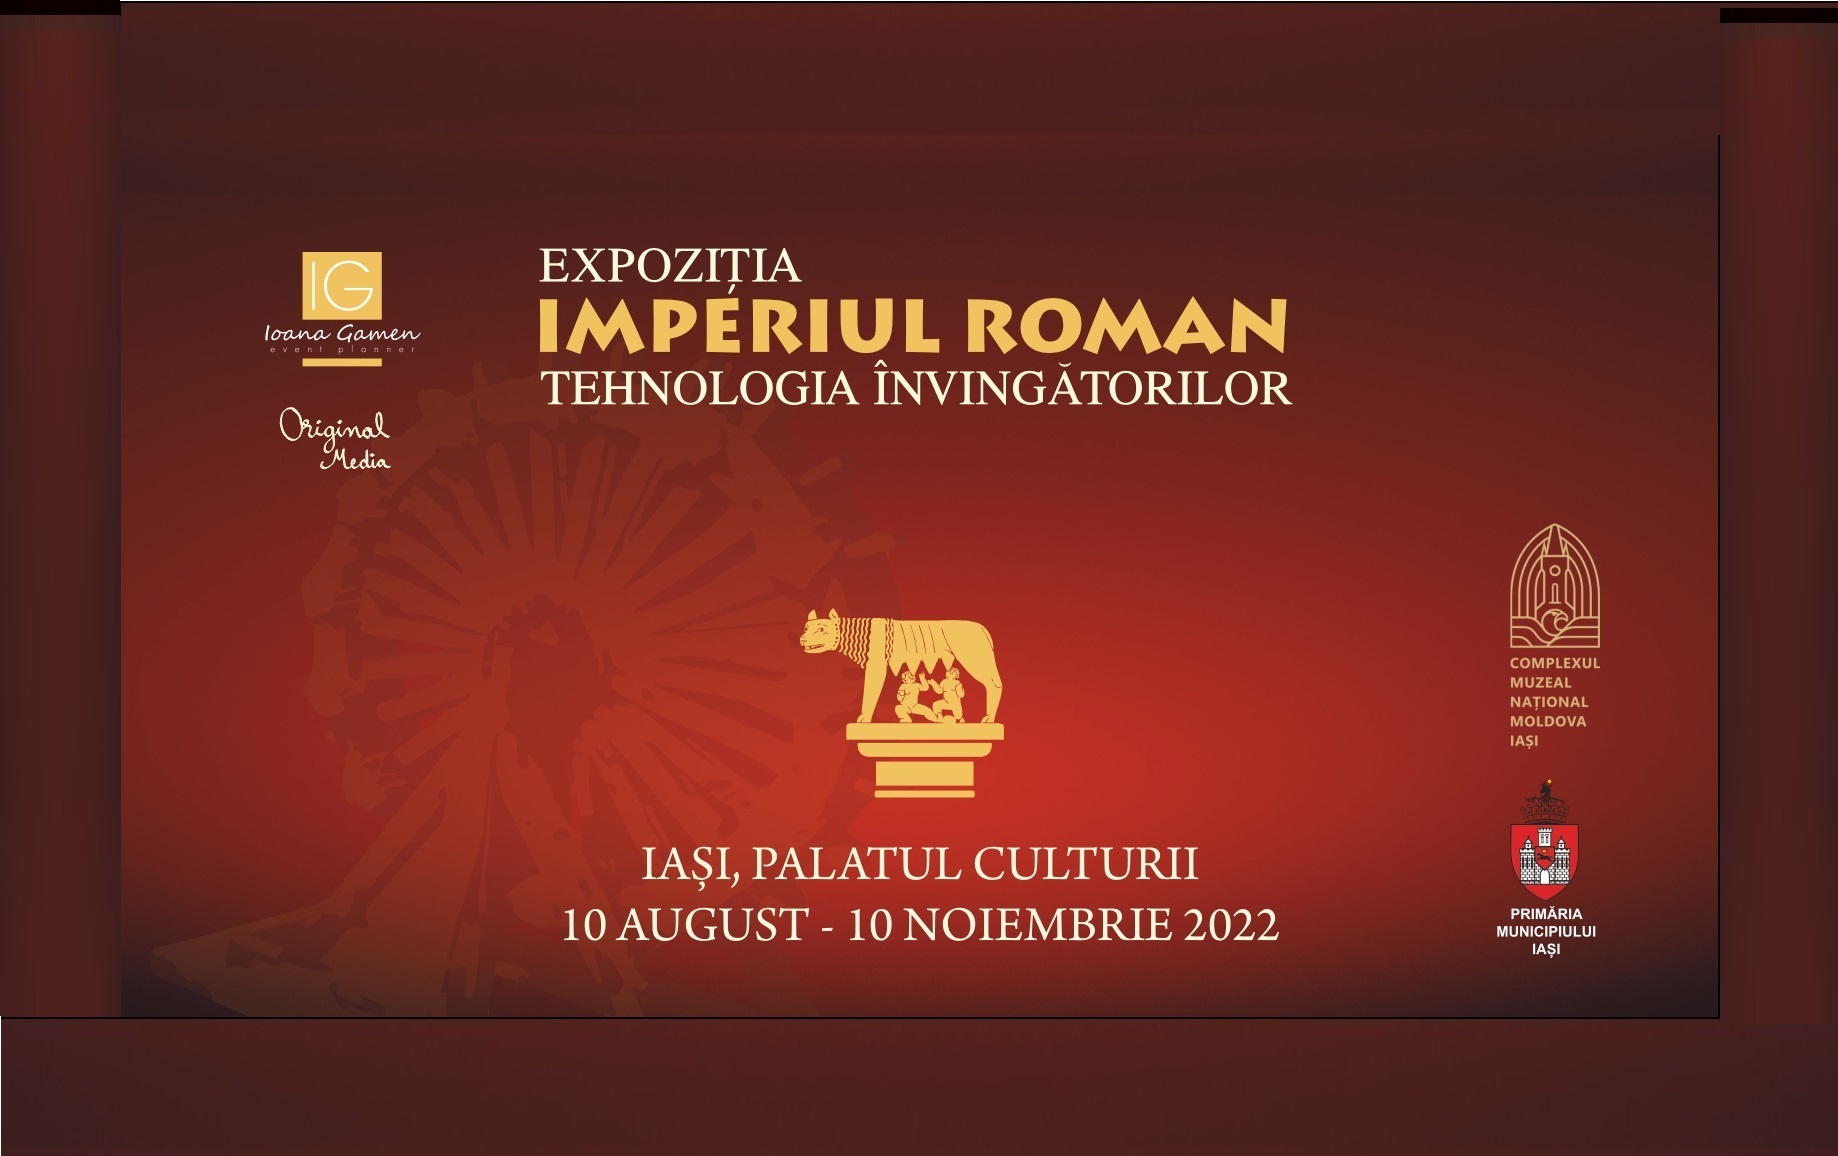 Expozitia Imperiul Roman - Tehnologia Invingatorilor